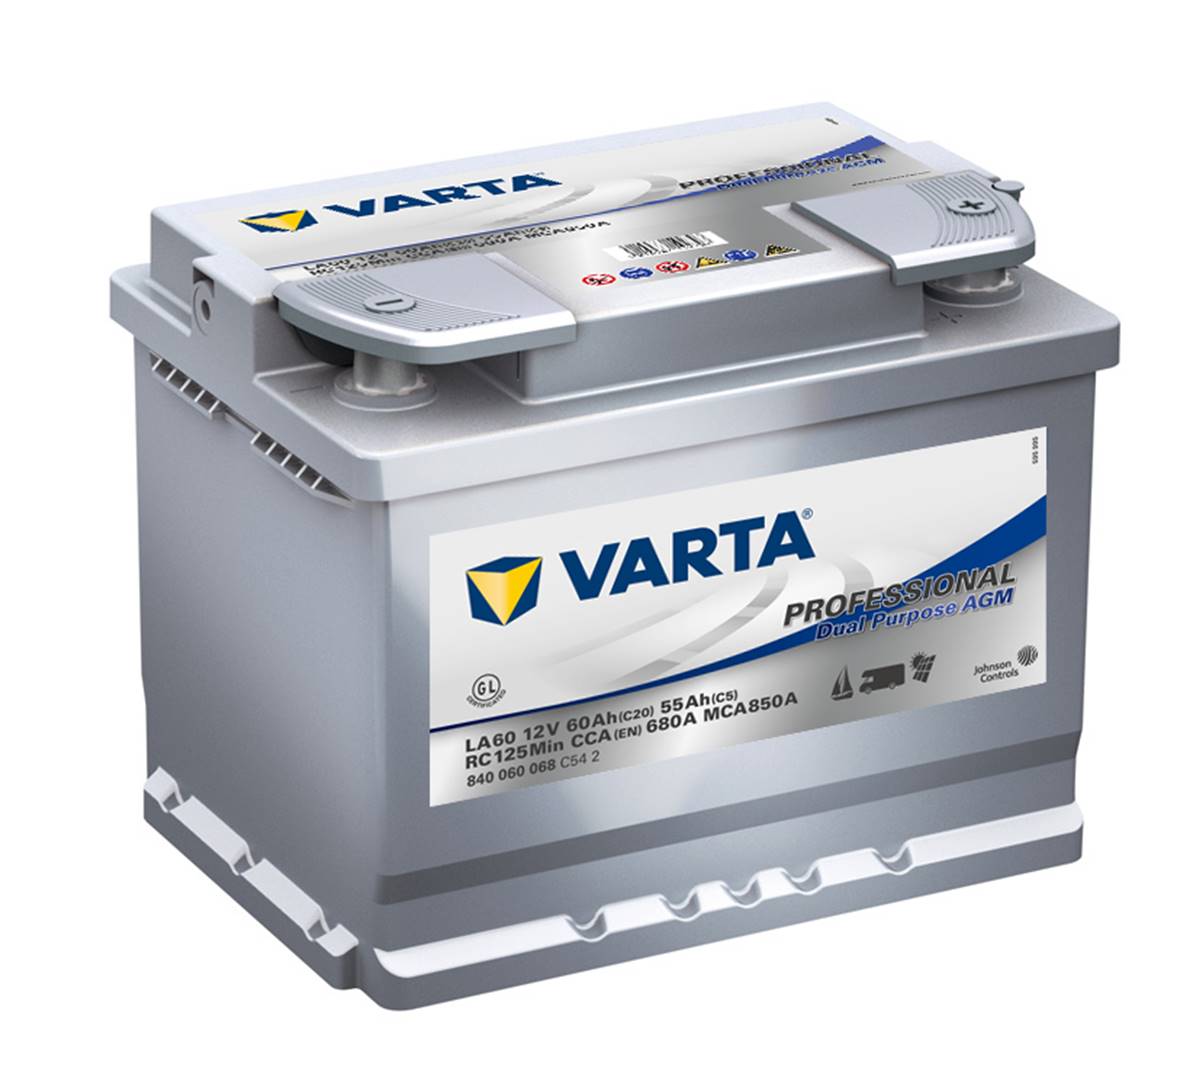 Varta C20. Batterie de camion Varta 55Ah 12V